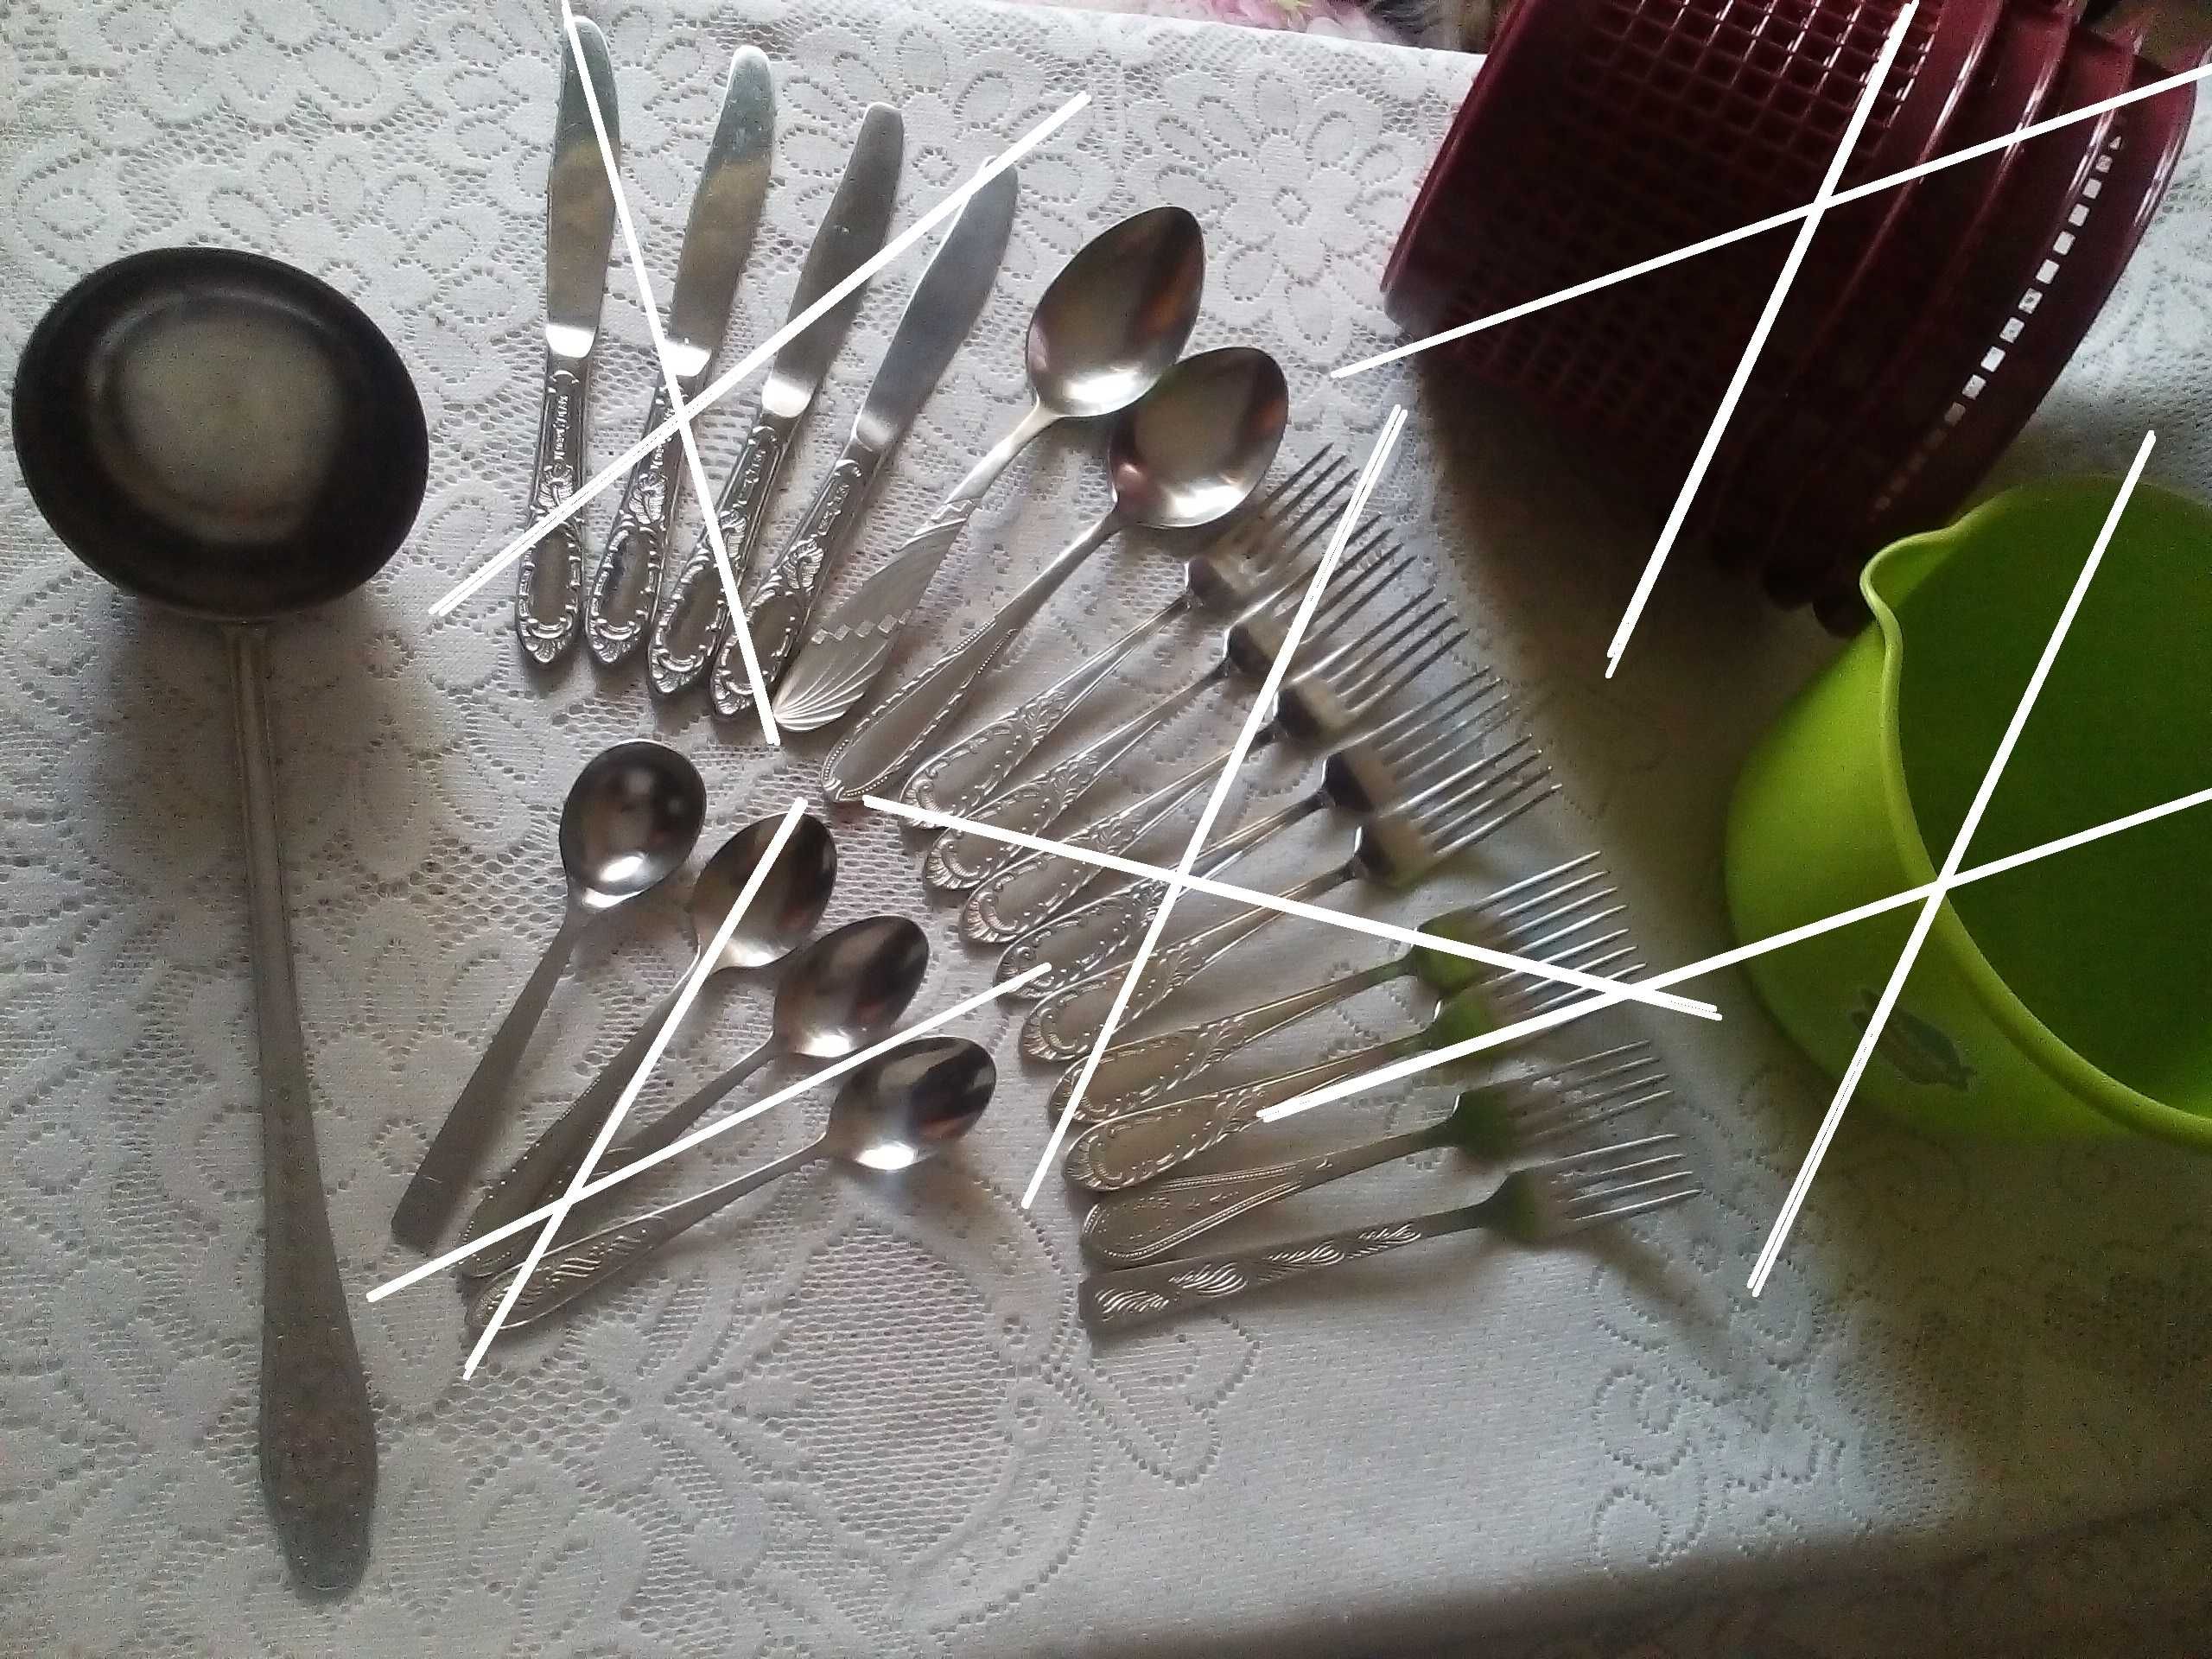 половник кухонный черпак нерж нож ложка вилка столовый прибор